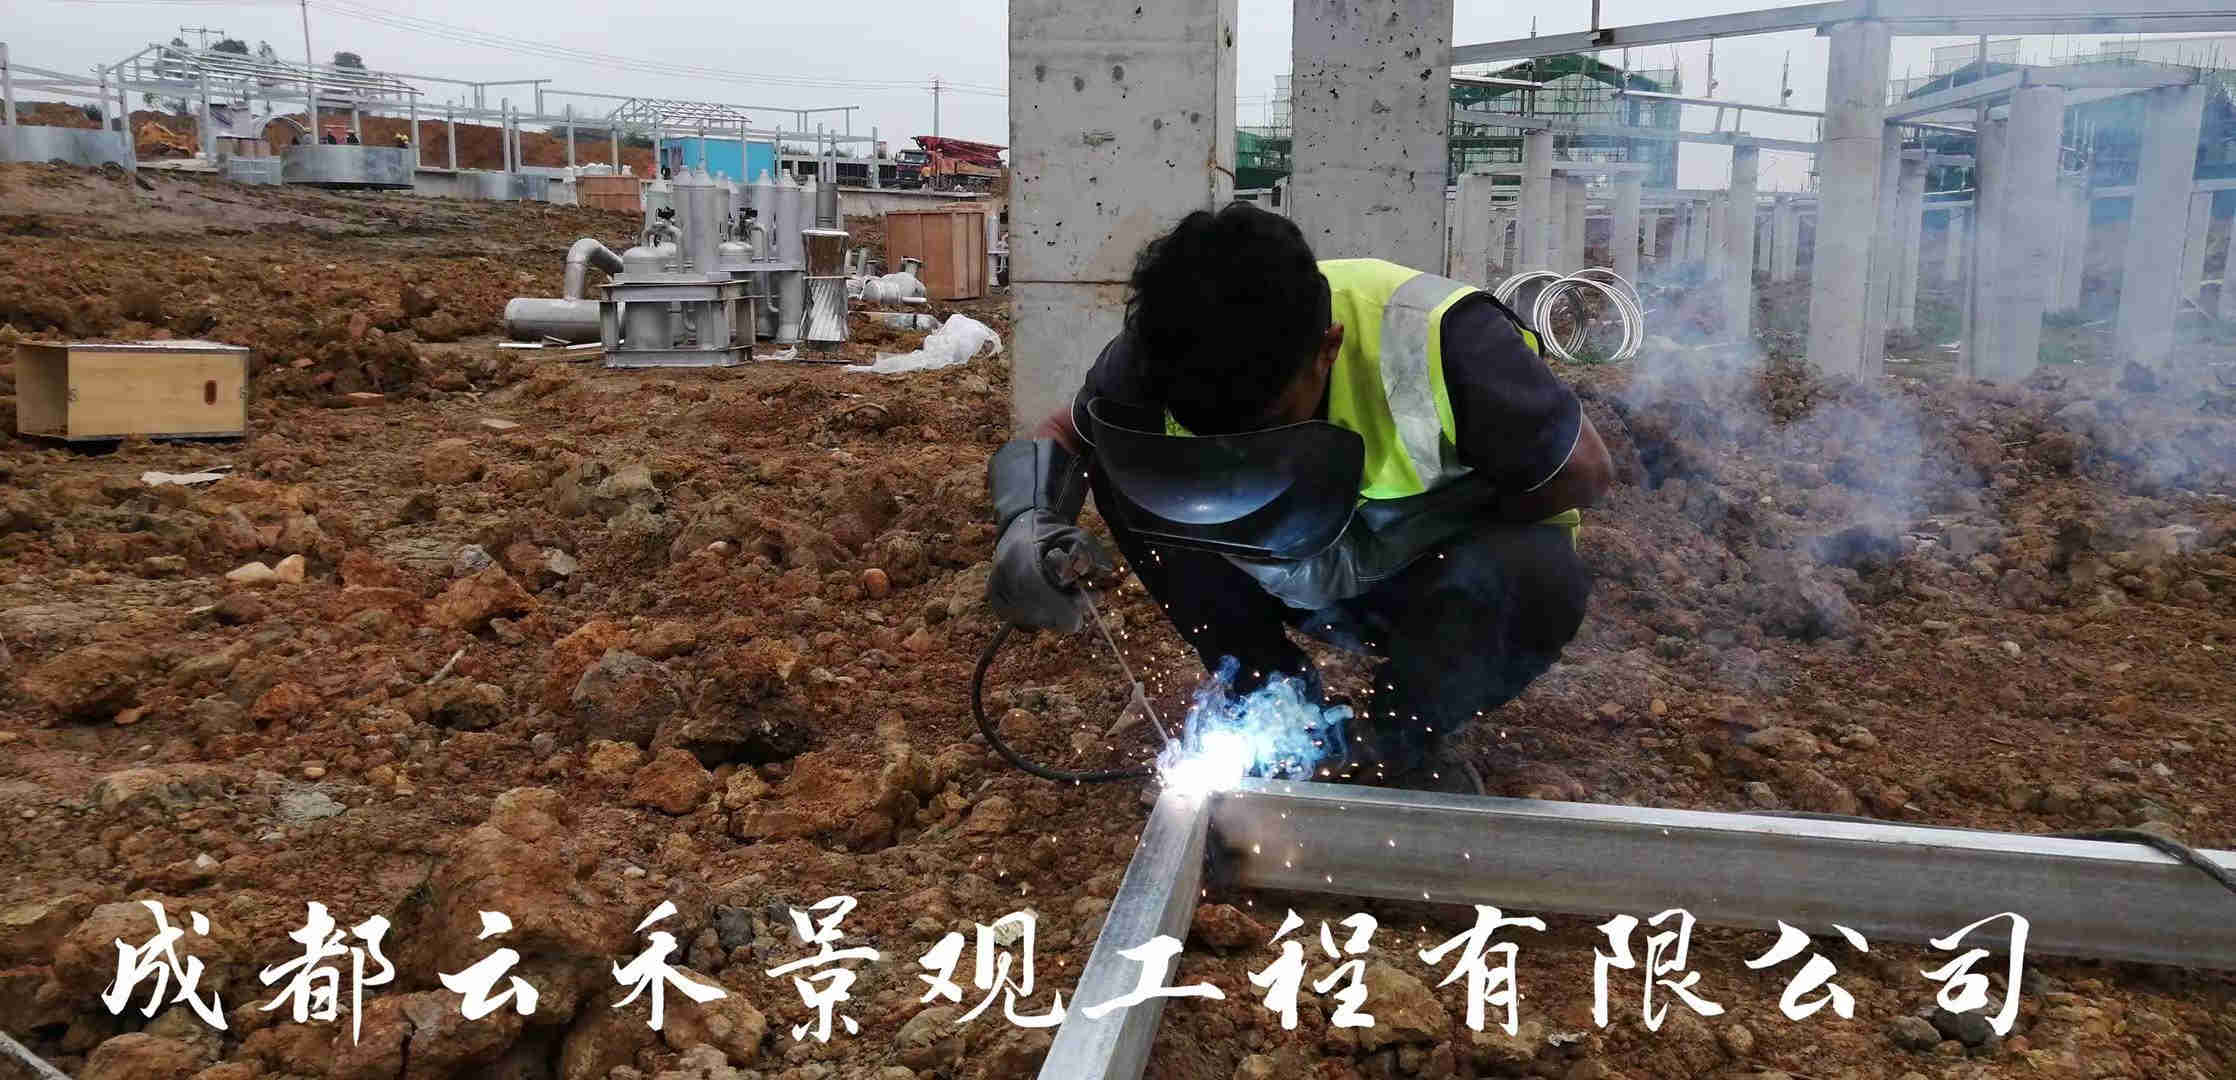 成都龙泉大运会音乐喷泉工程项目正在紧锣密鼓的进行中